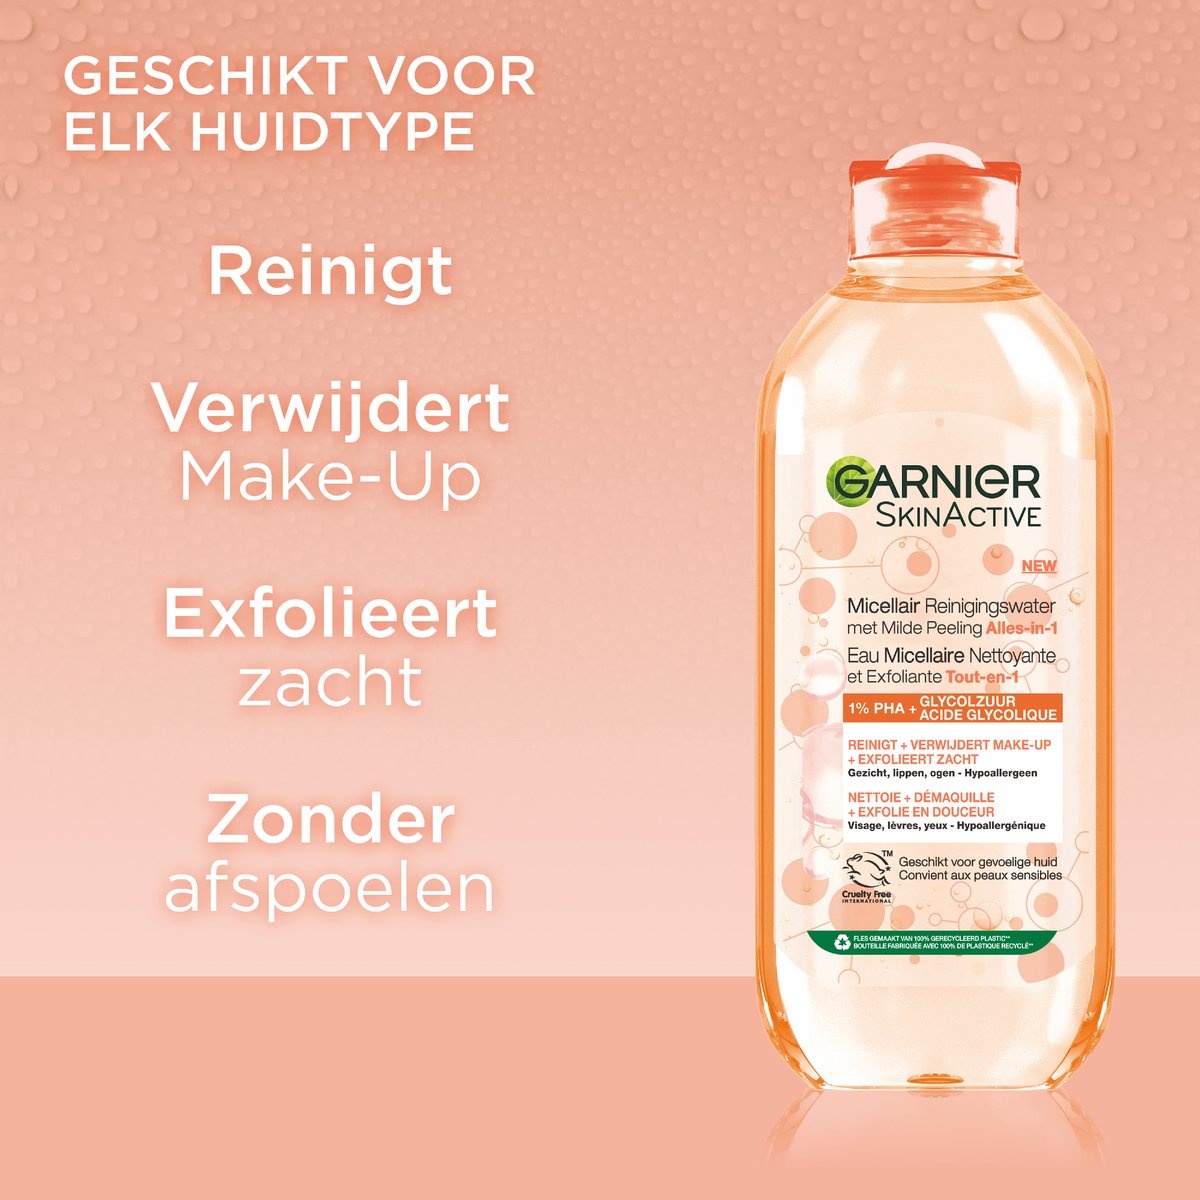 Garnier SkinActive Mizellen-Reinigungswasser mit mildem Peeling All-in-1 400 ml